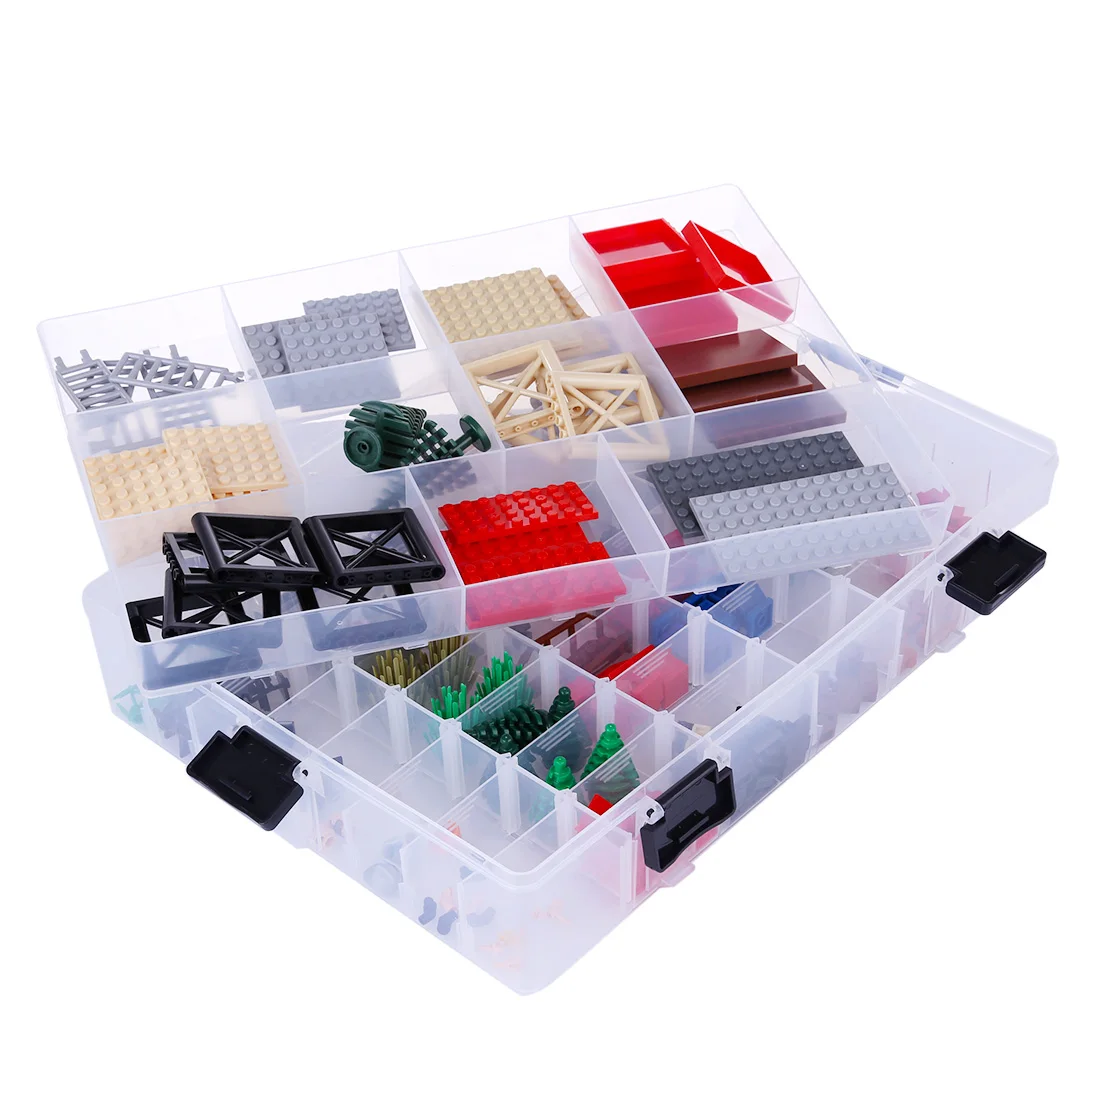 Однослойный строительный ящик Органайзер Ящик для хранения игрушек контейнер с 59 сетками мальчик девочка игрушки подарки кирпичи